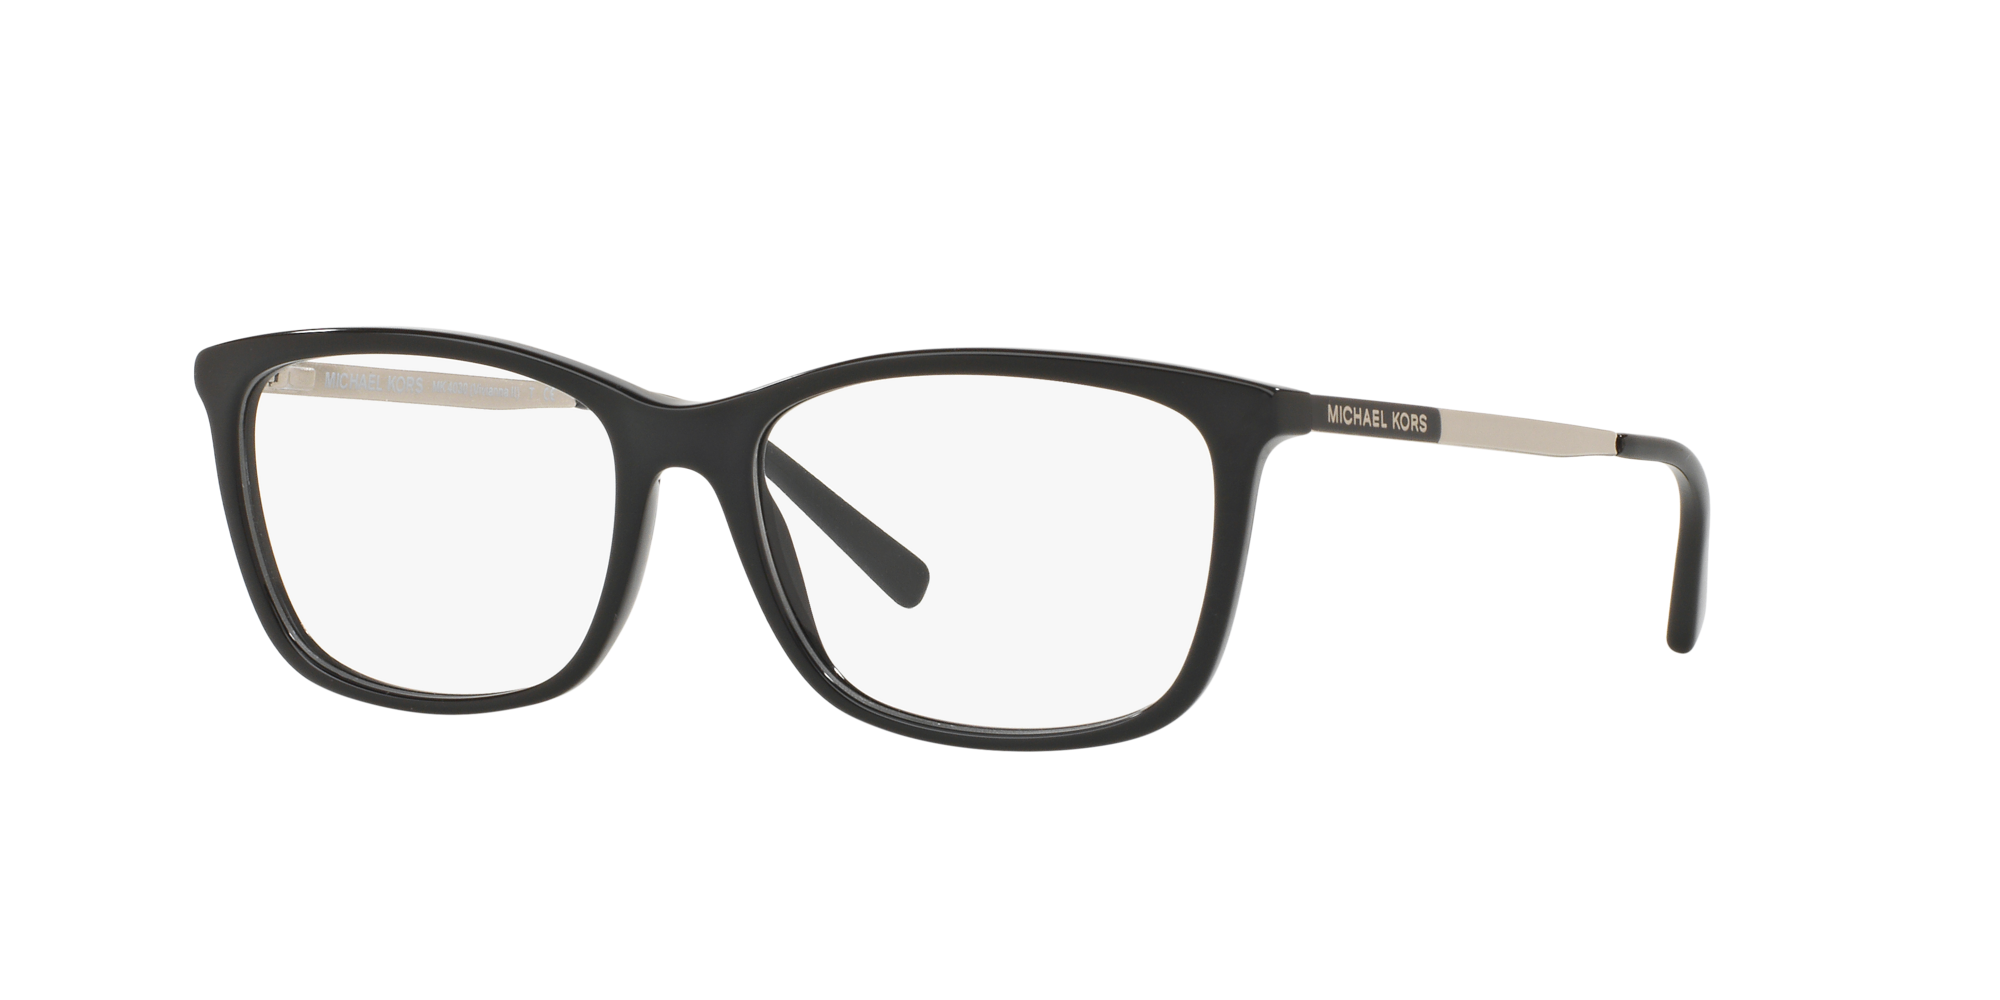 Michael Kors MK3032 Coconut Grove Eyeglasses Frame  BestNewGlassescom